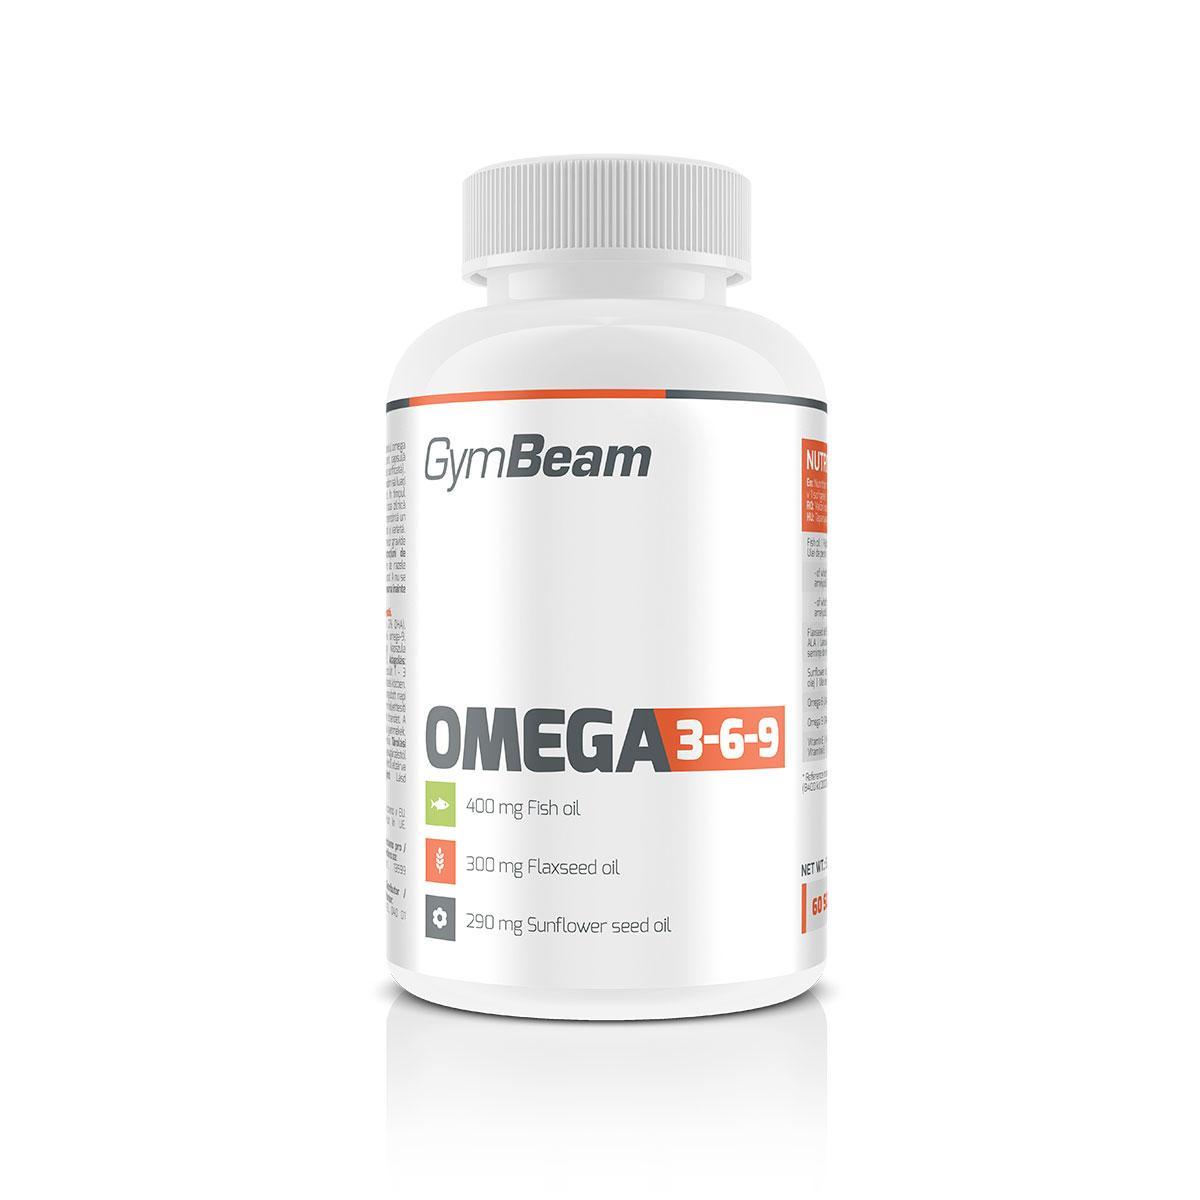 A 12 legjobb omega-3 forrás – 4 szem dióval fedezhető a napi szükséglet